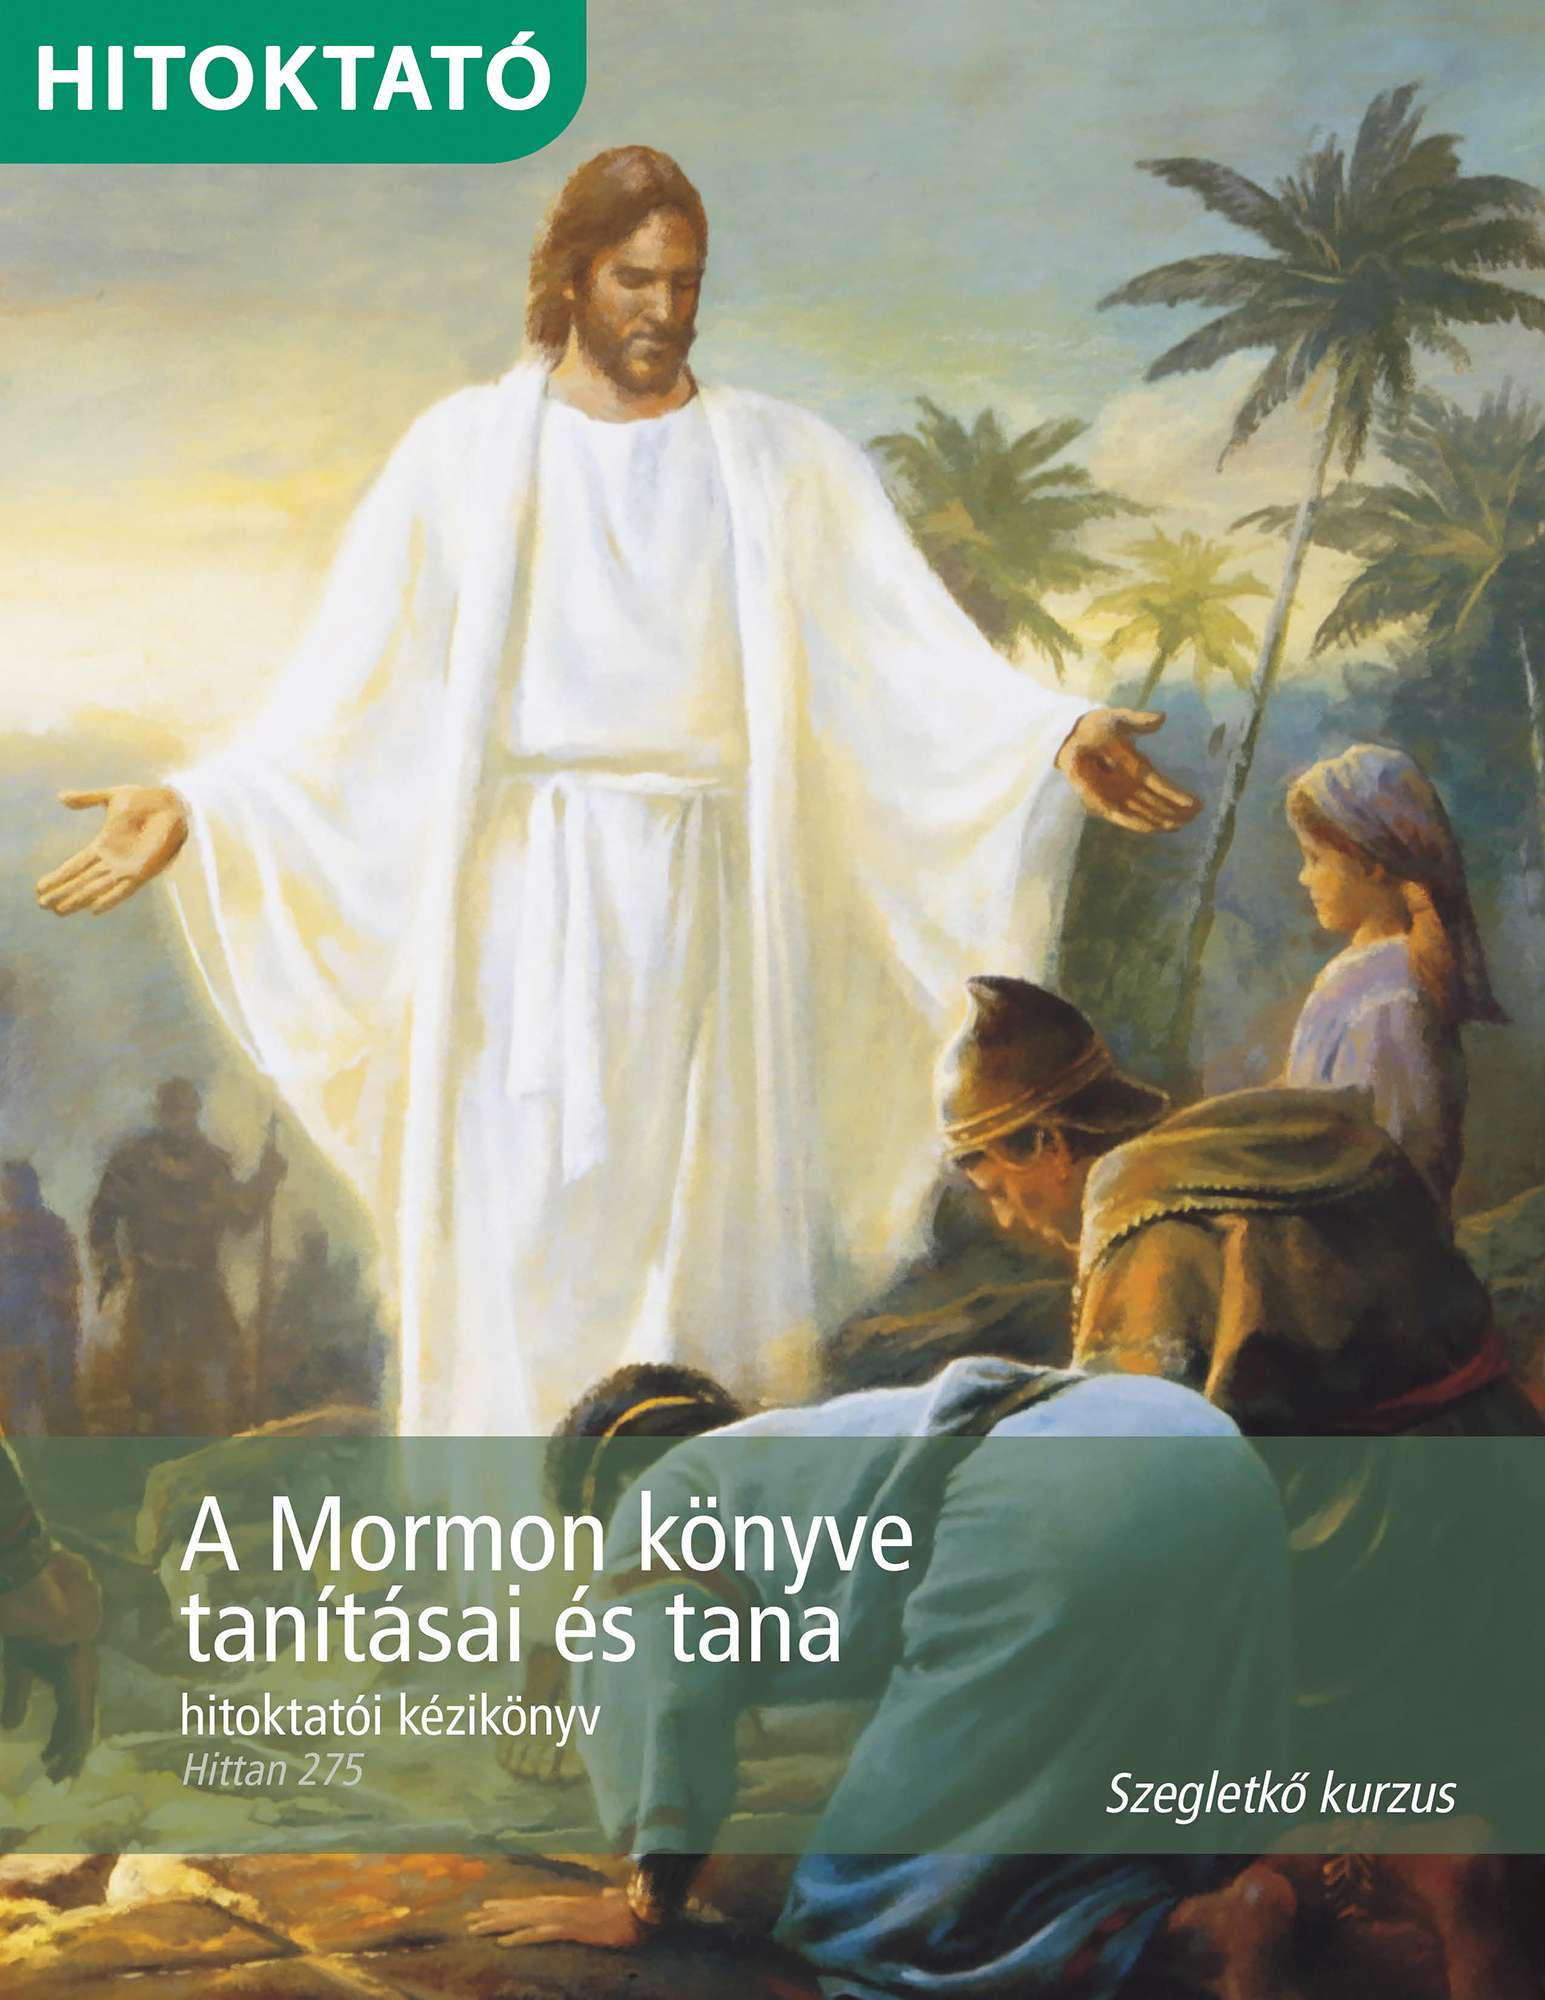 A Mormon könyve tanításai és tana hitoktatói kézikönyv (Hittan 275)